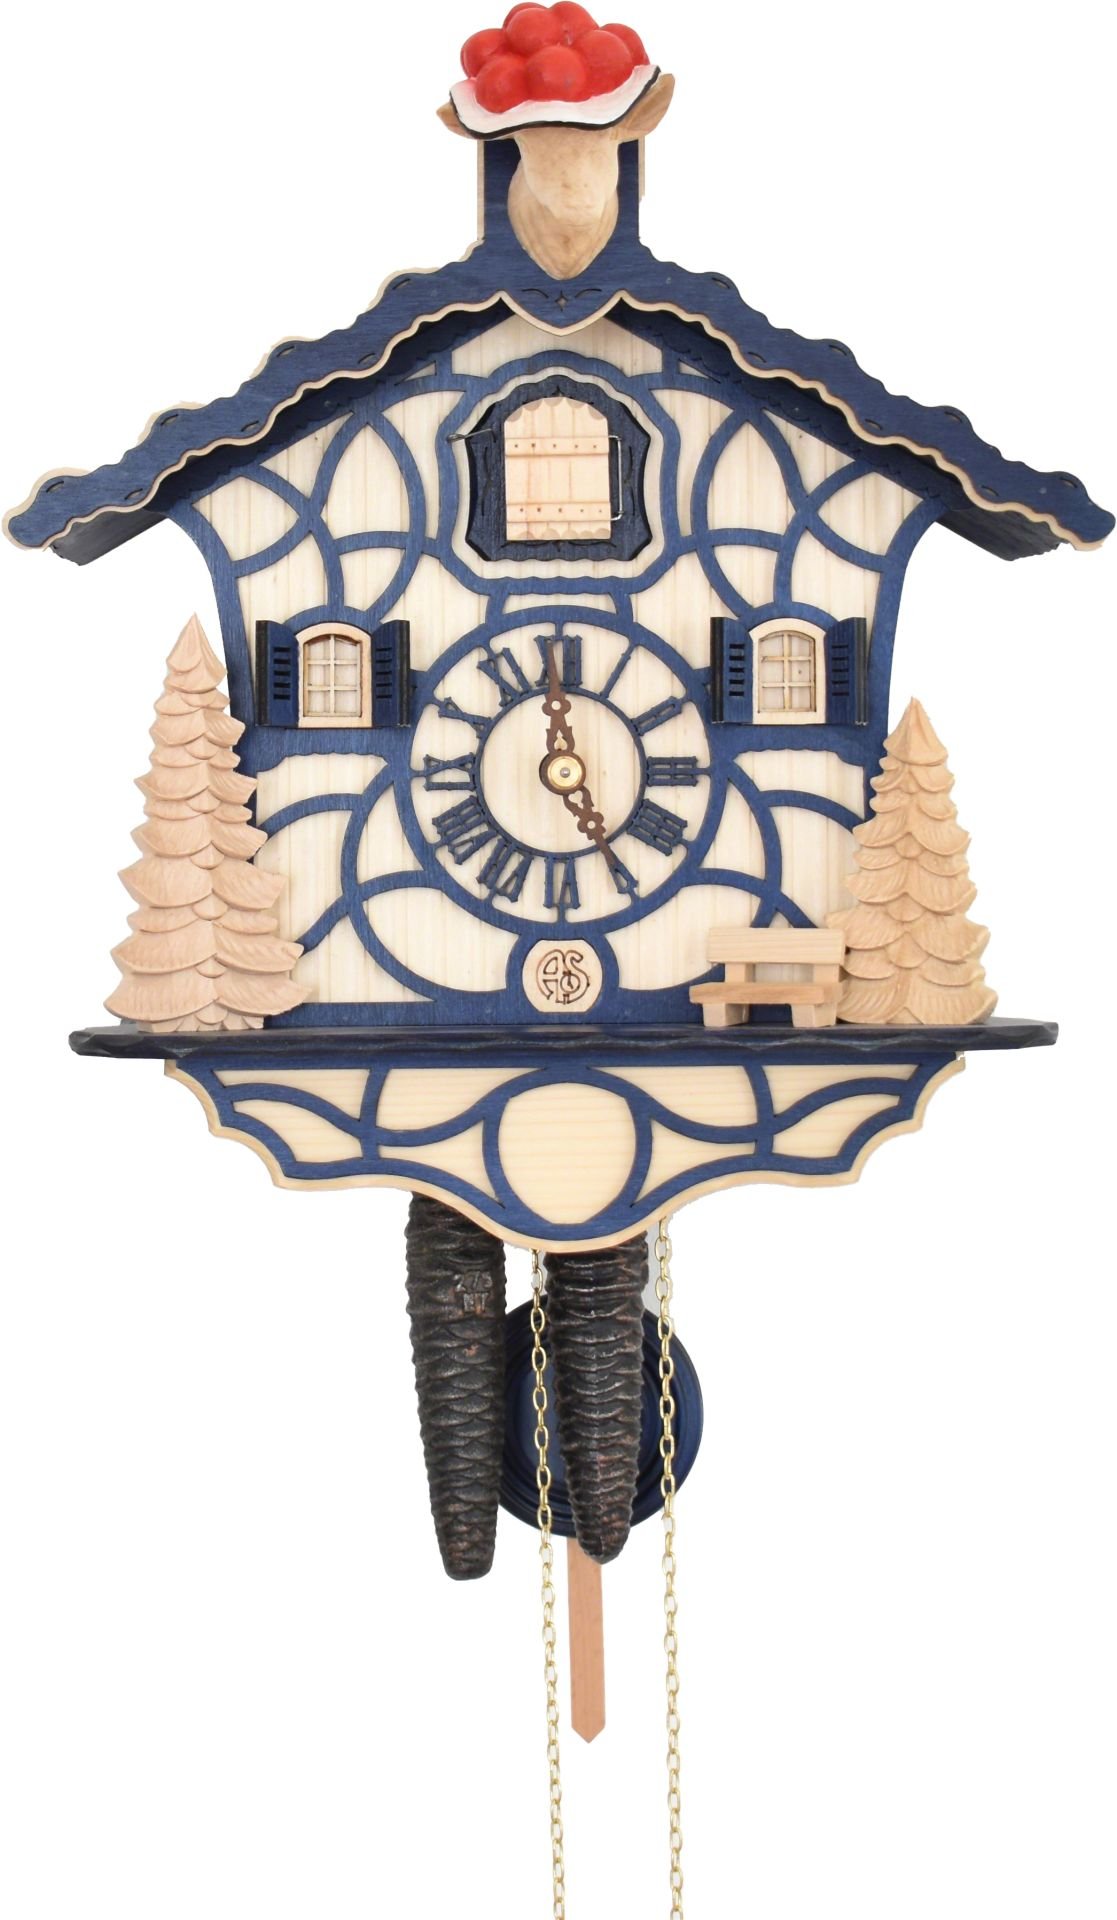 Cuckoo Clock Chalet Style 1 Day Movement 30cm by Anton Schneider